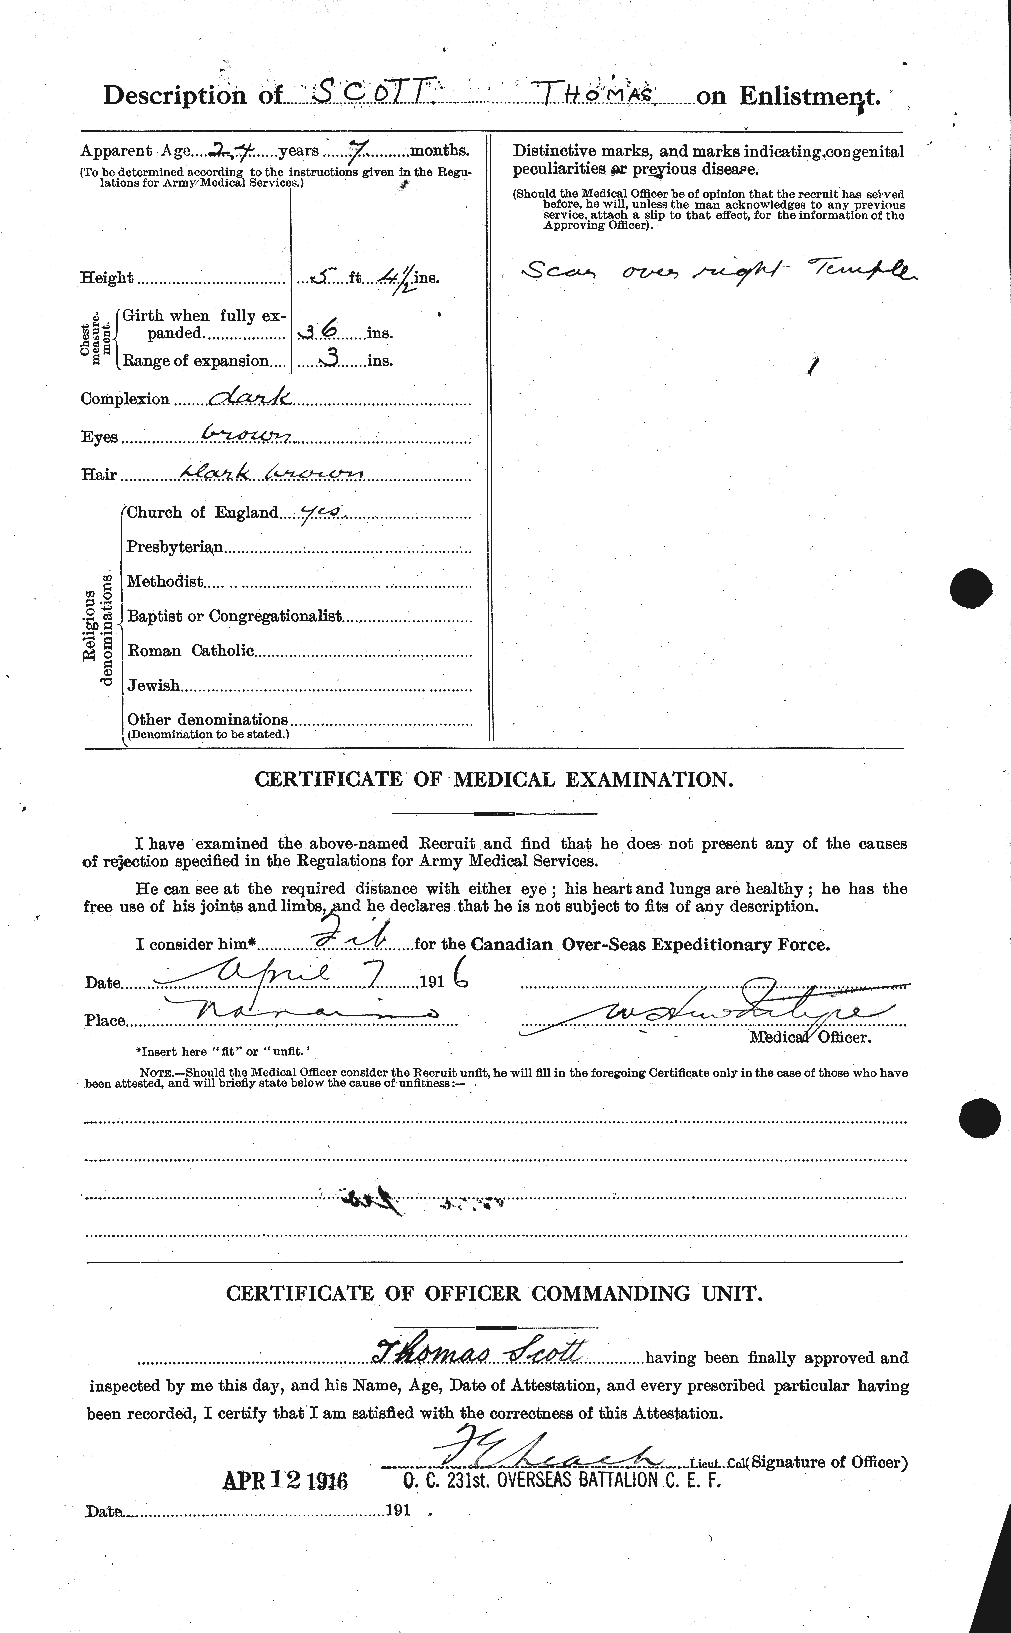 Dossiers du Personnel de la Première Guerre mondiale - CEC 088533b